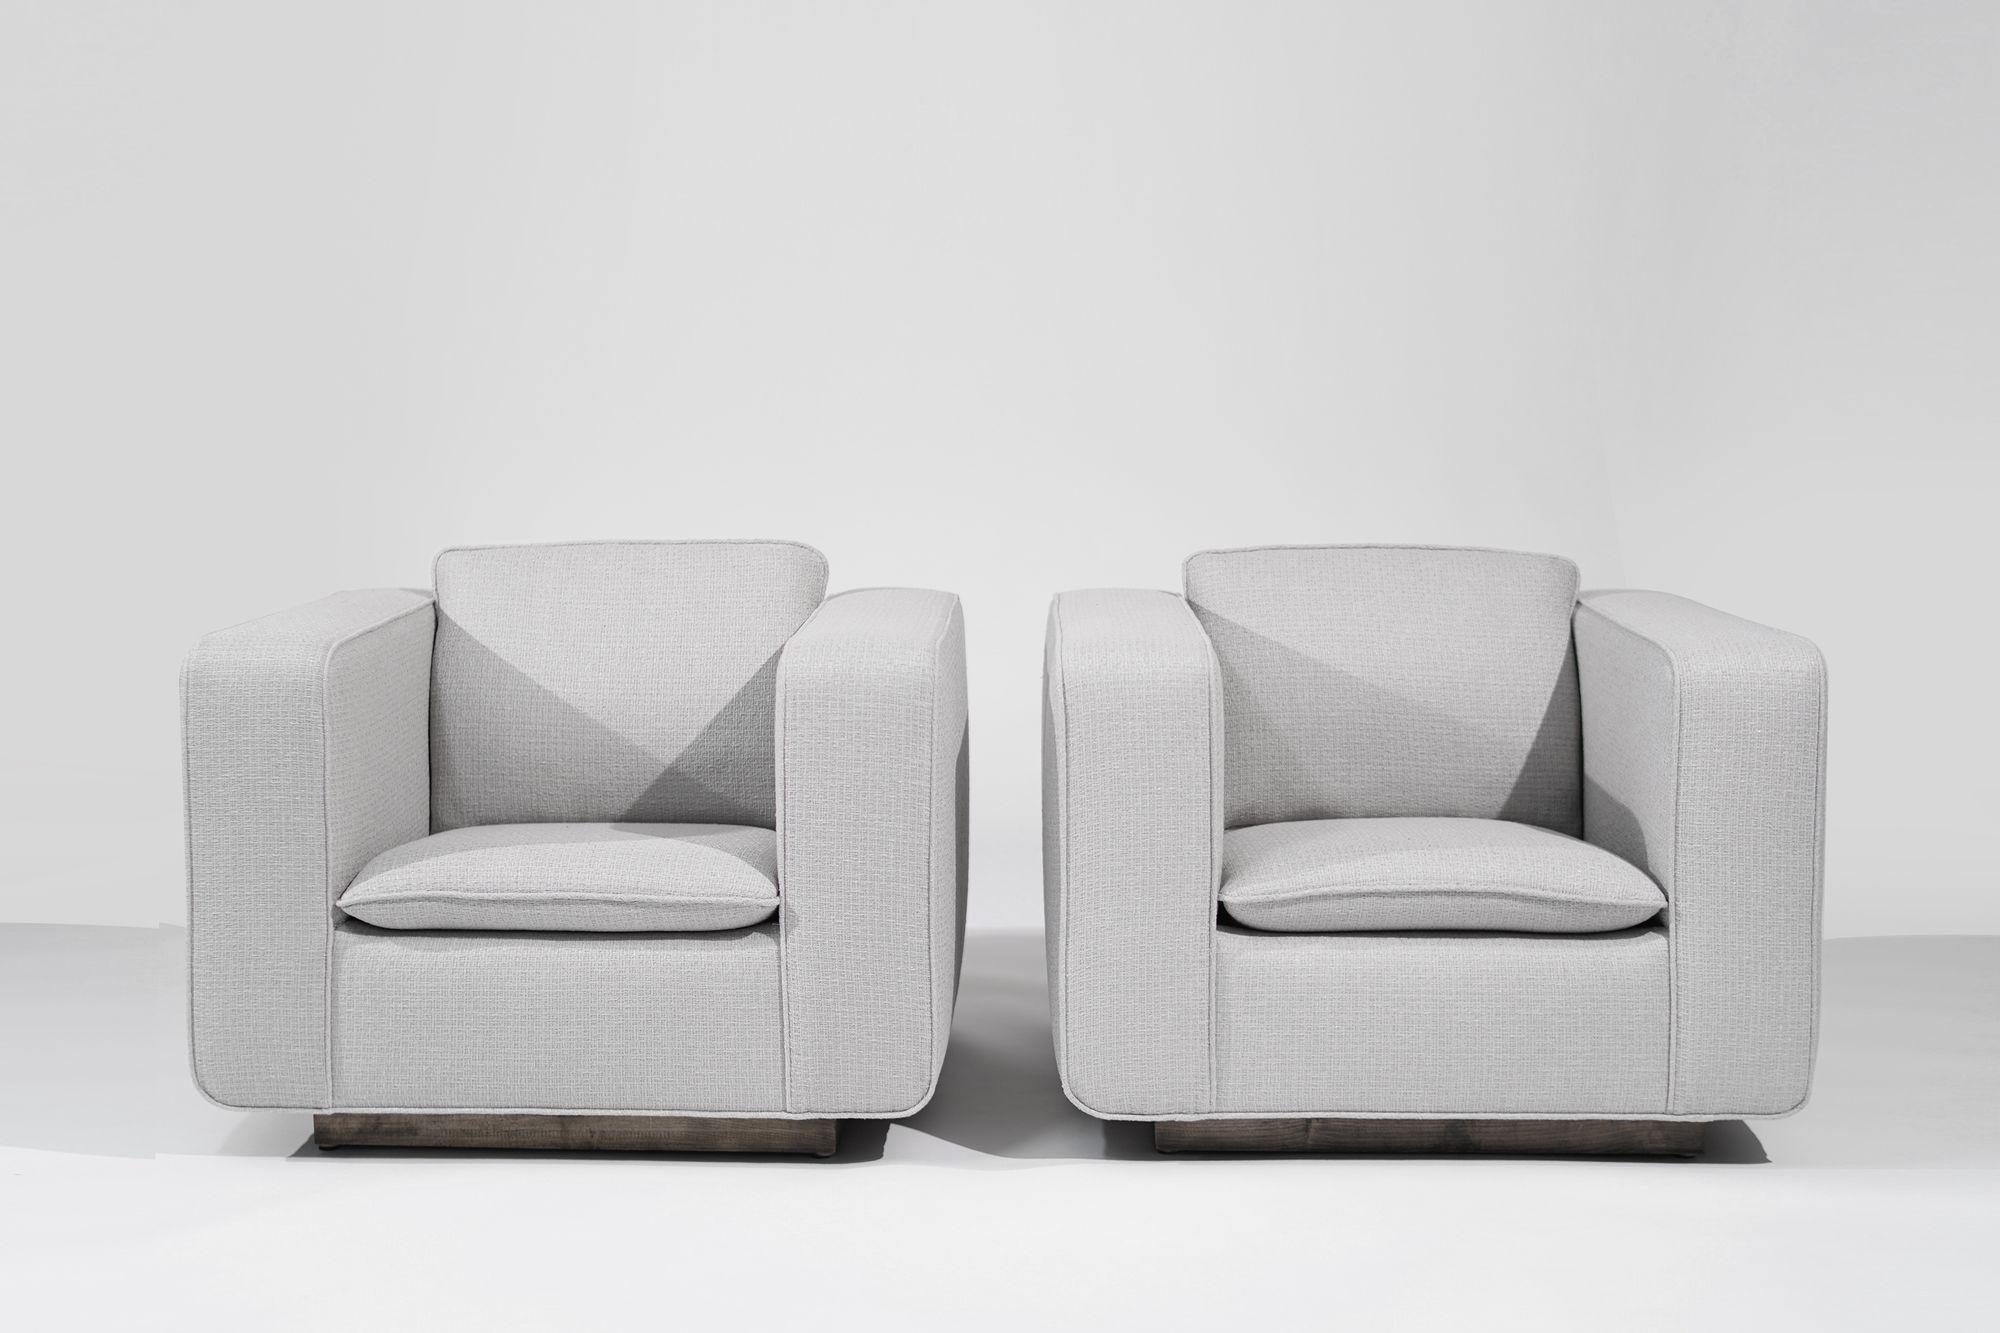 Versetzen Sie Ihren Raum in das goldene Zeitalter des italienischen Designs mit einem Paar Loungesessel aus den 1950er Jahren. Die mit schickem hellgrauem Leinen von HOLLY HUNT gepolsterten, flachen Stühle verbinden nahtlos die Ästhetik der